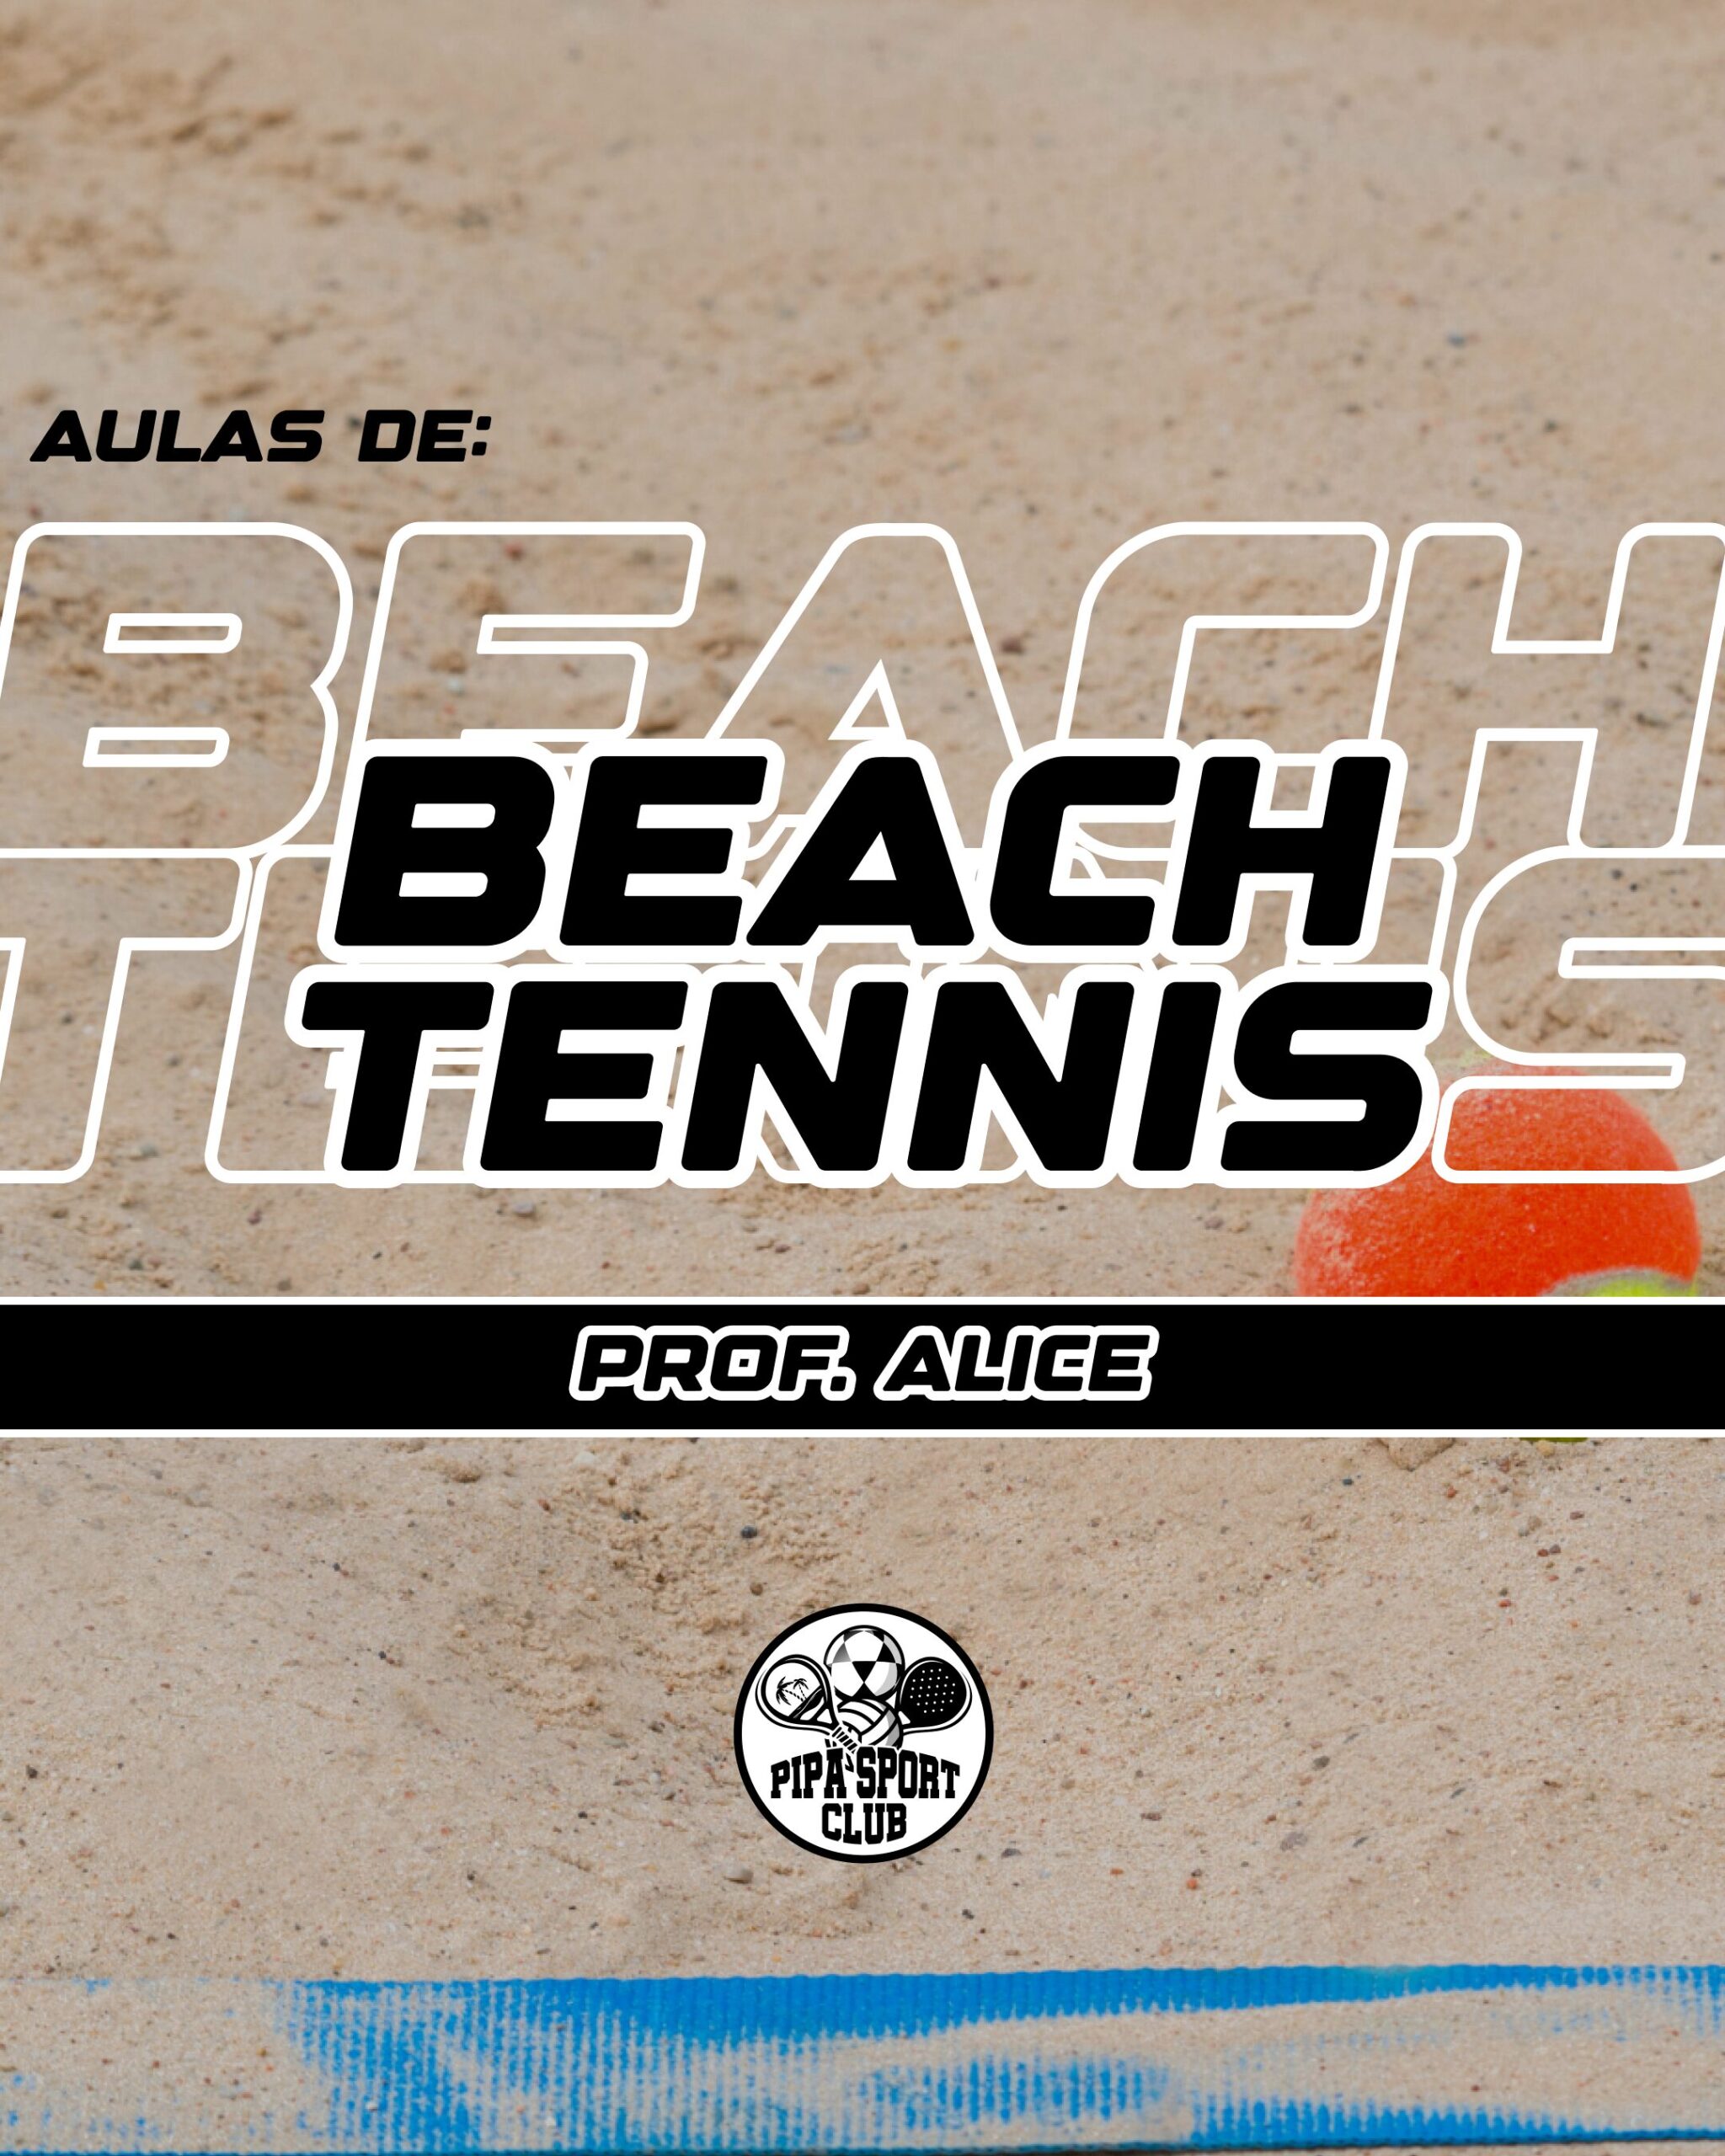 Beach-tennis (1)